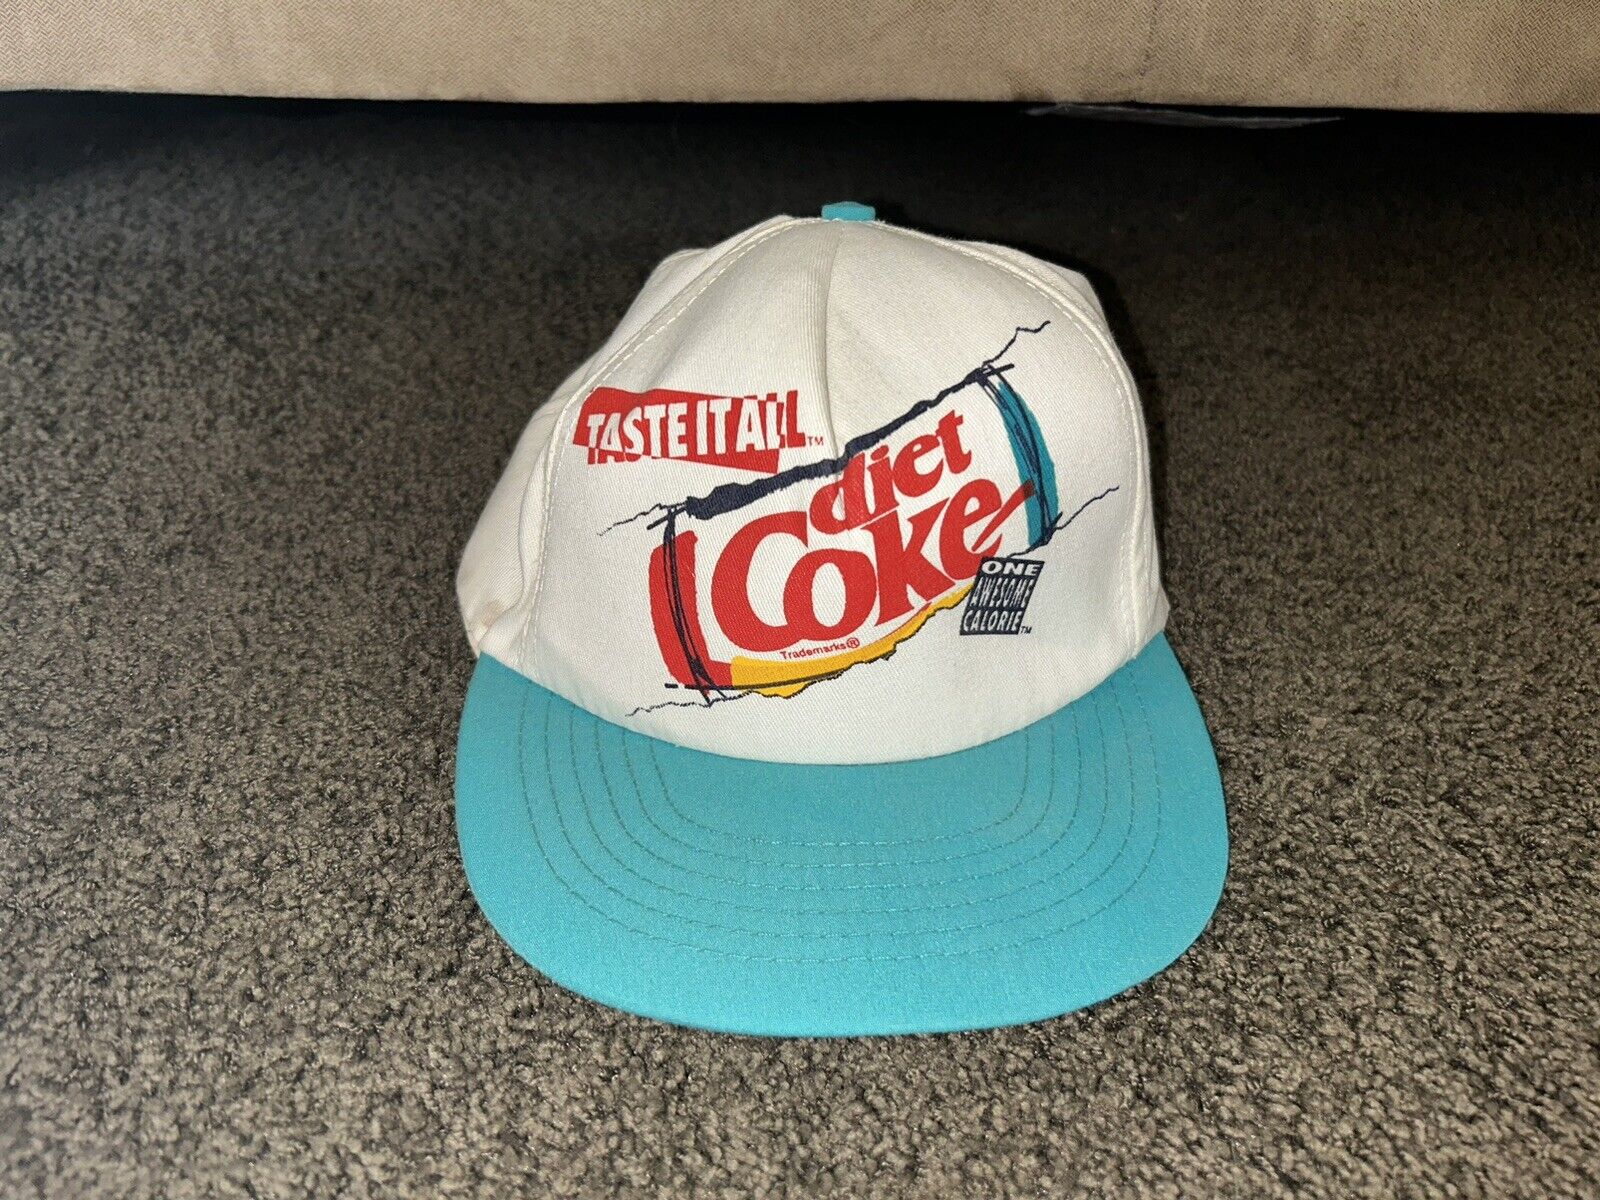 Vintage 90s Diet Coke Soda Hat SnapBack Taste It All - Coca Cola Cap Made In USA